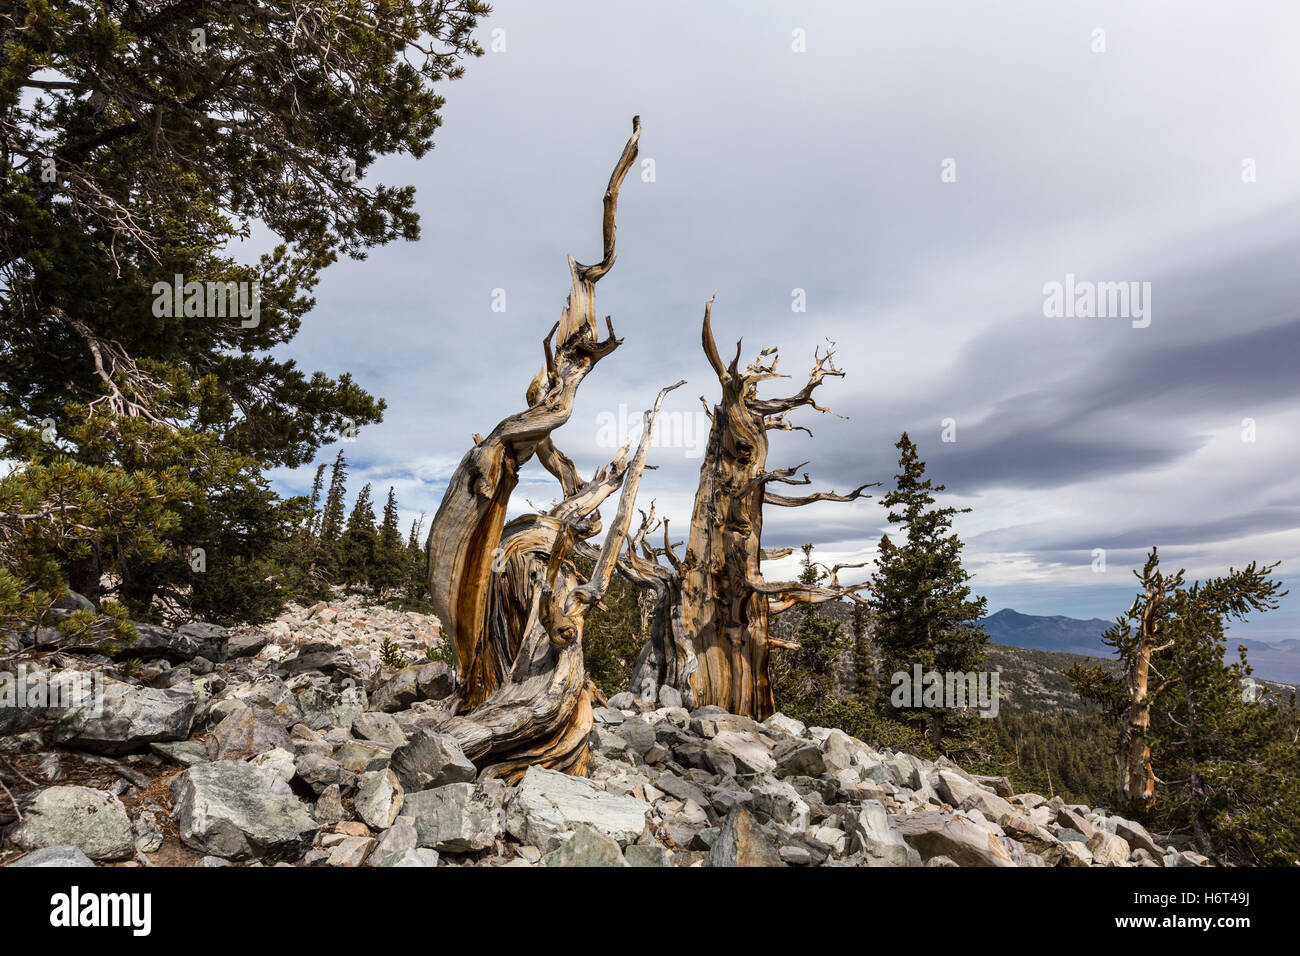 Ancient Bristlecone Pines dans le Parc National du Grand Bassin dans le nord du Nevada. Bristlecone Pines sont les plus vieux arbres au monde. Banque D'Images